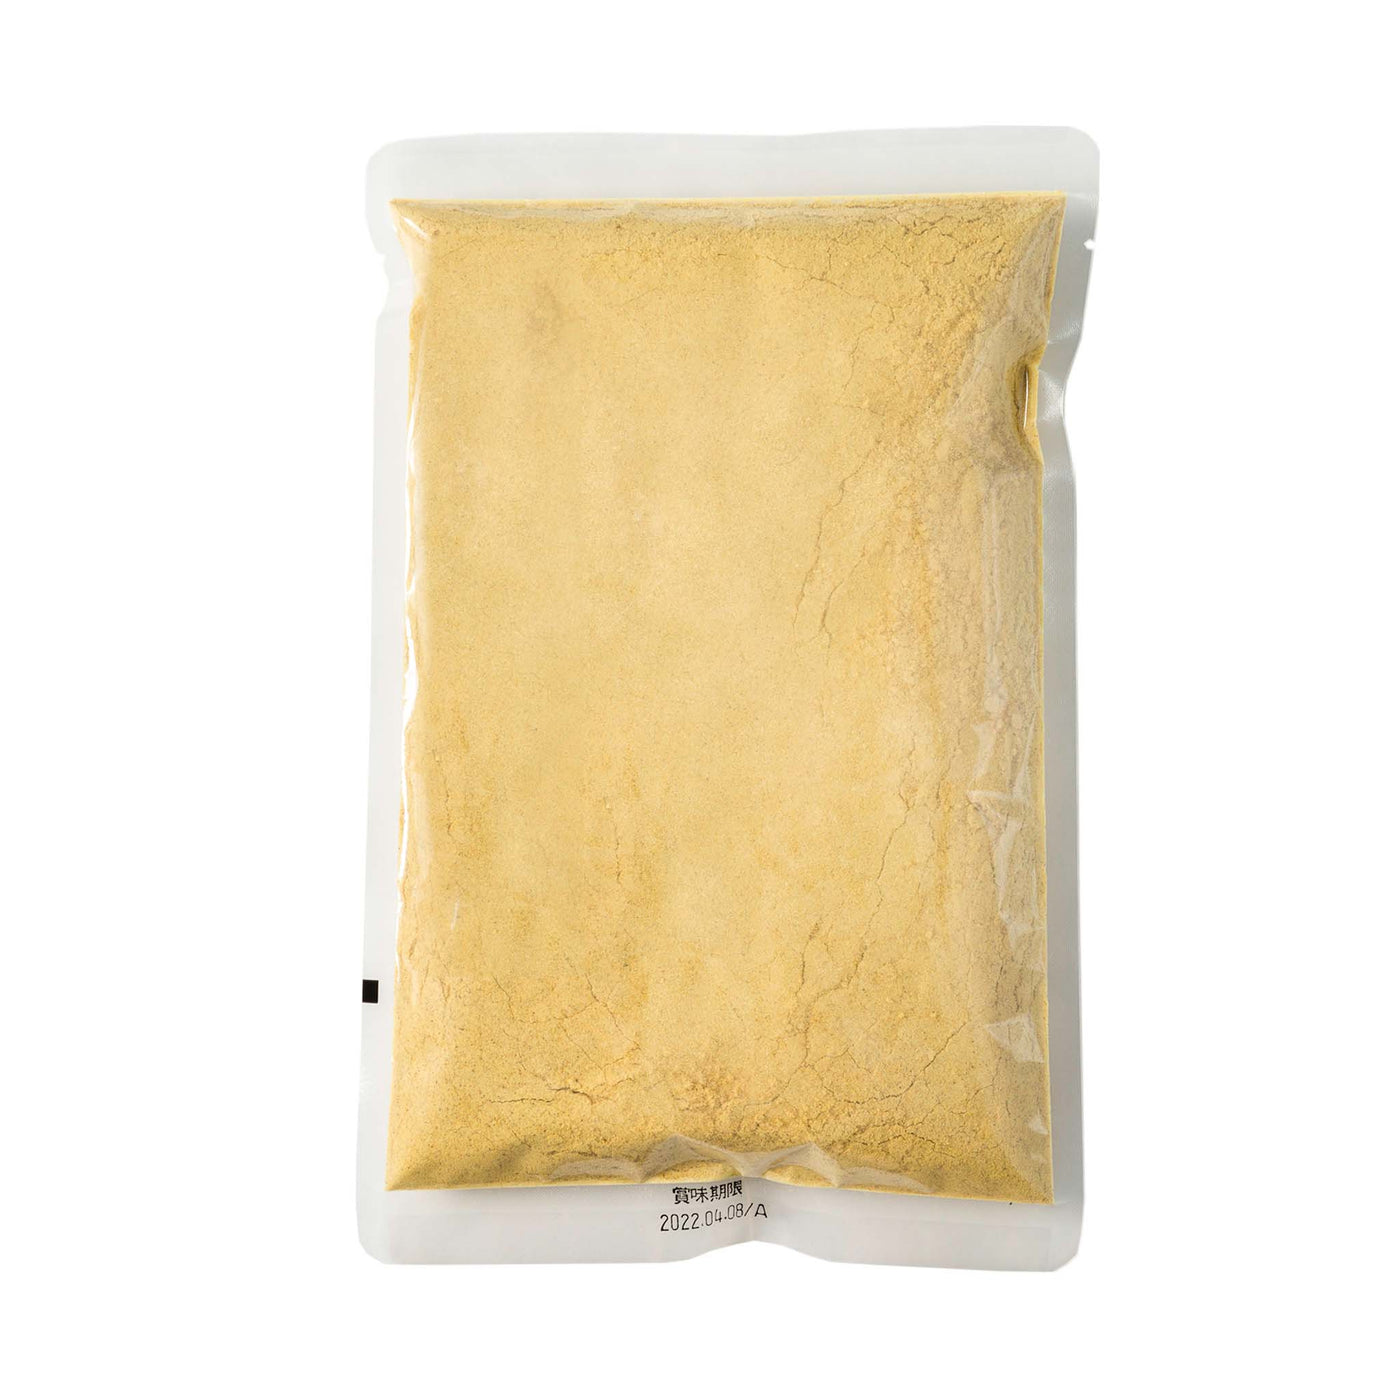 Organic Karashi Mustard Powder - 300g